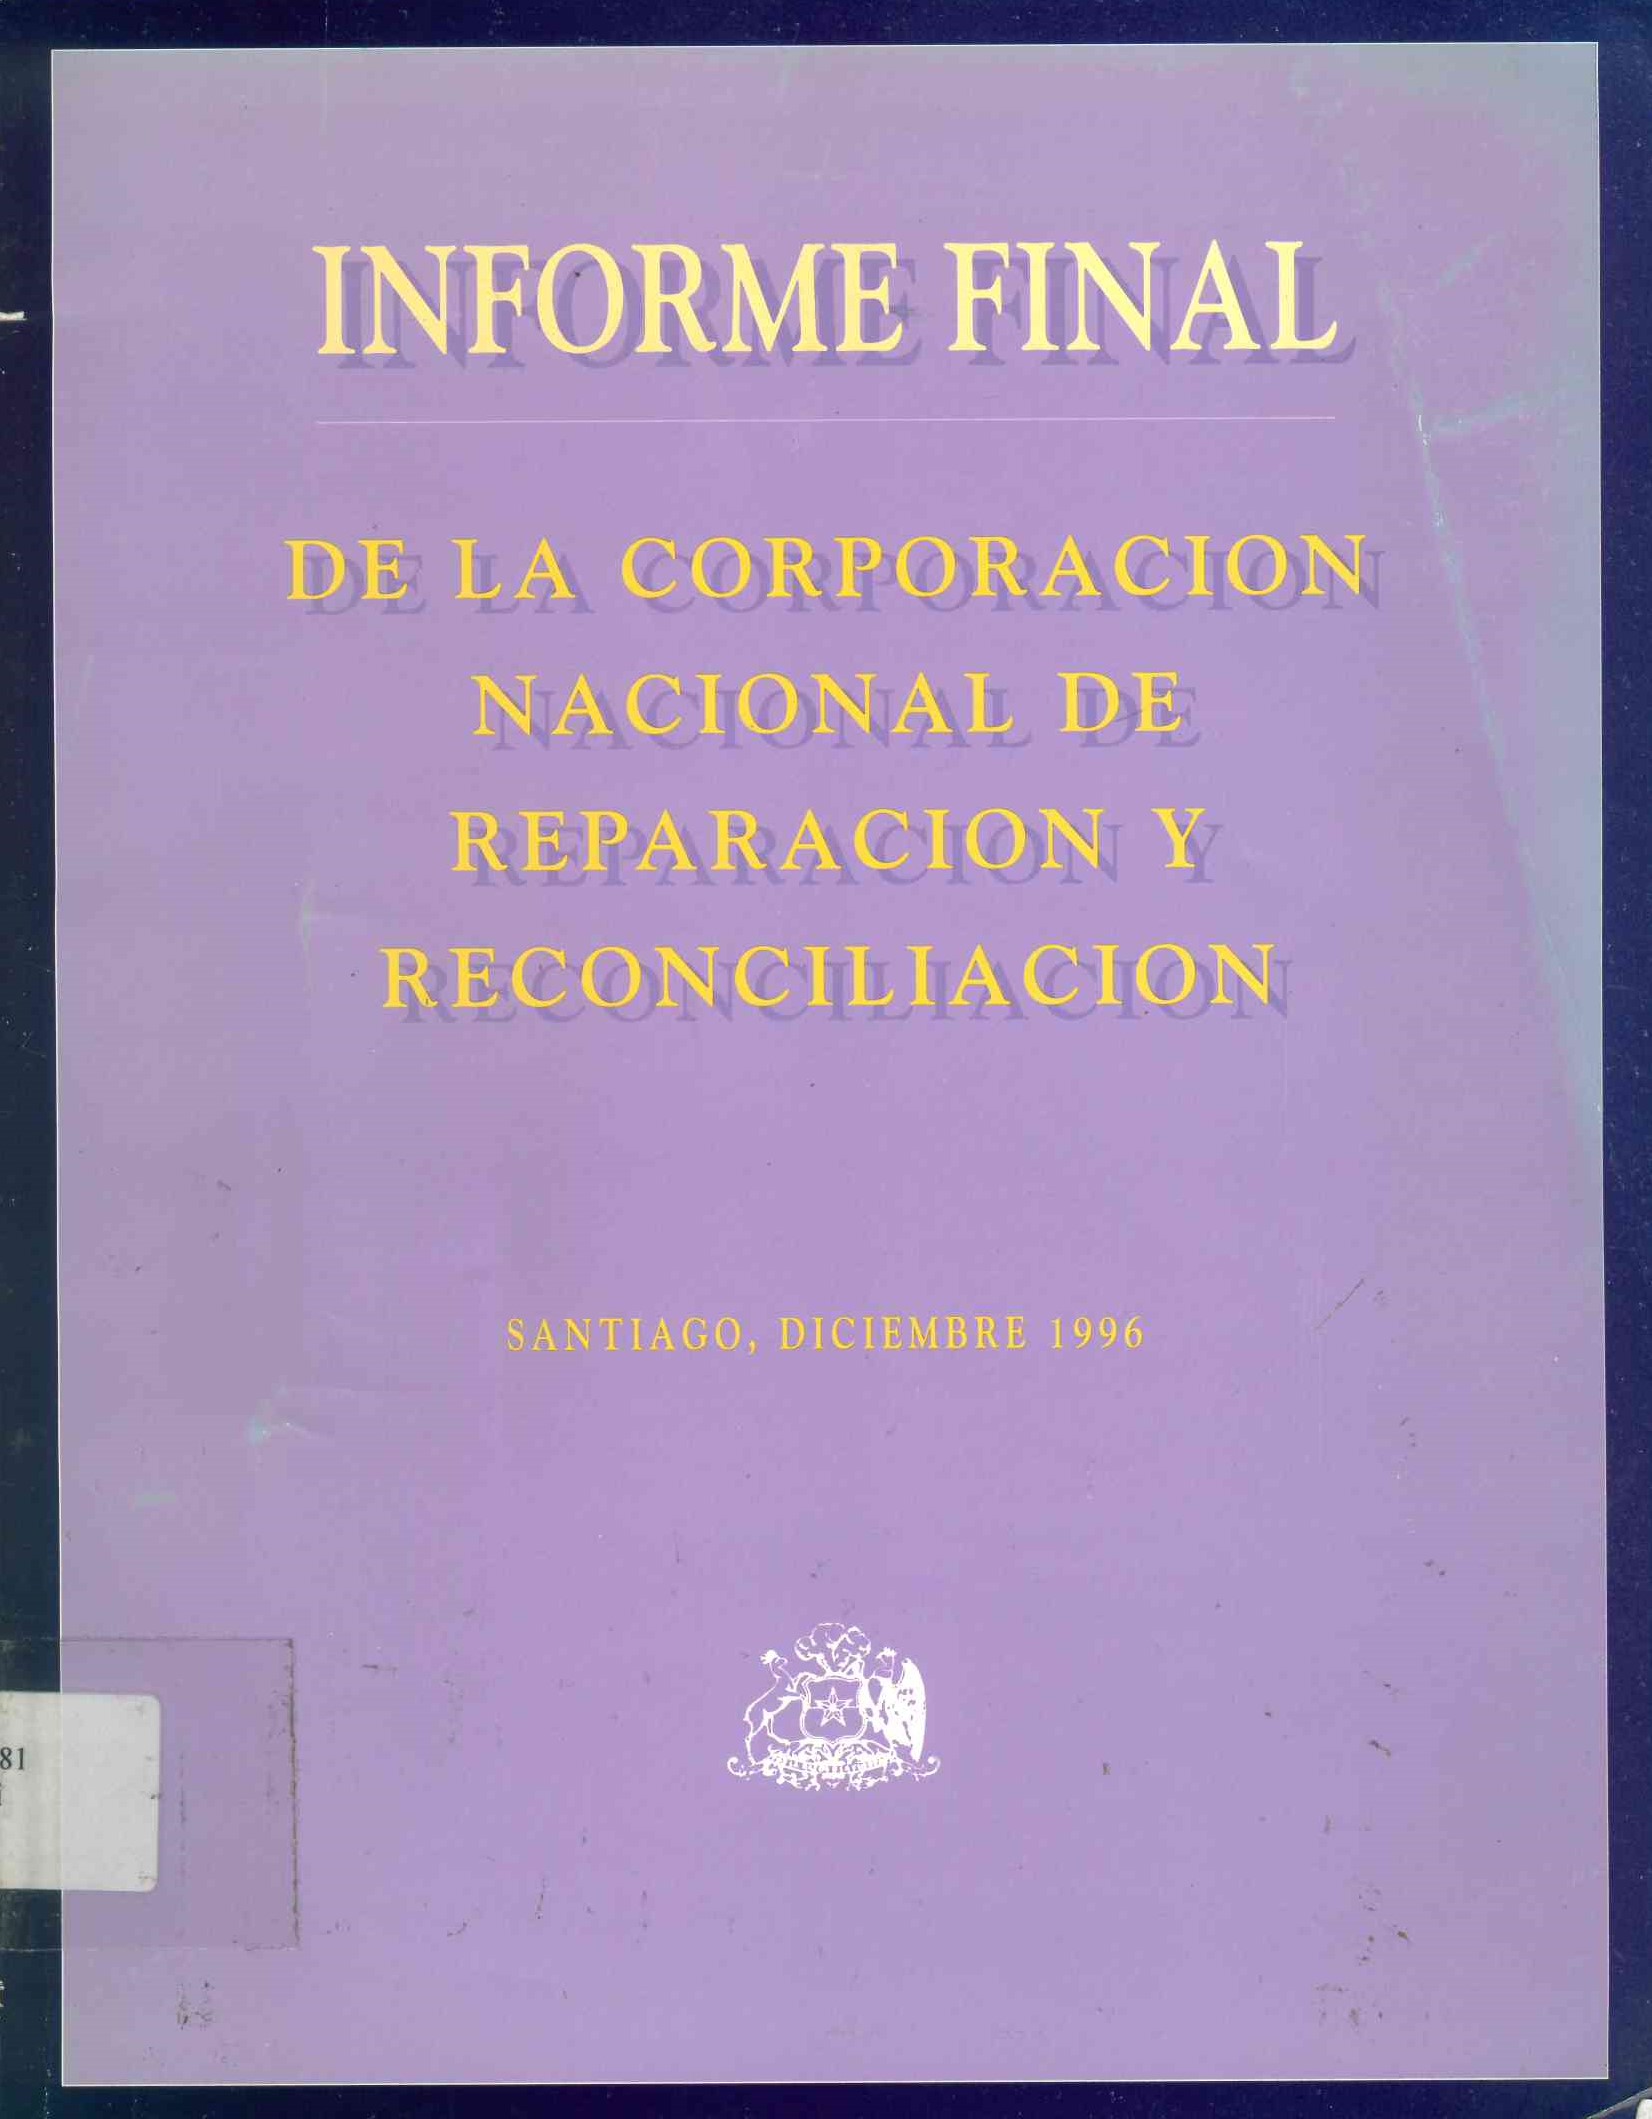 Informe Final de la corporación Nacional de Reparación y Reconciliación